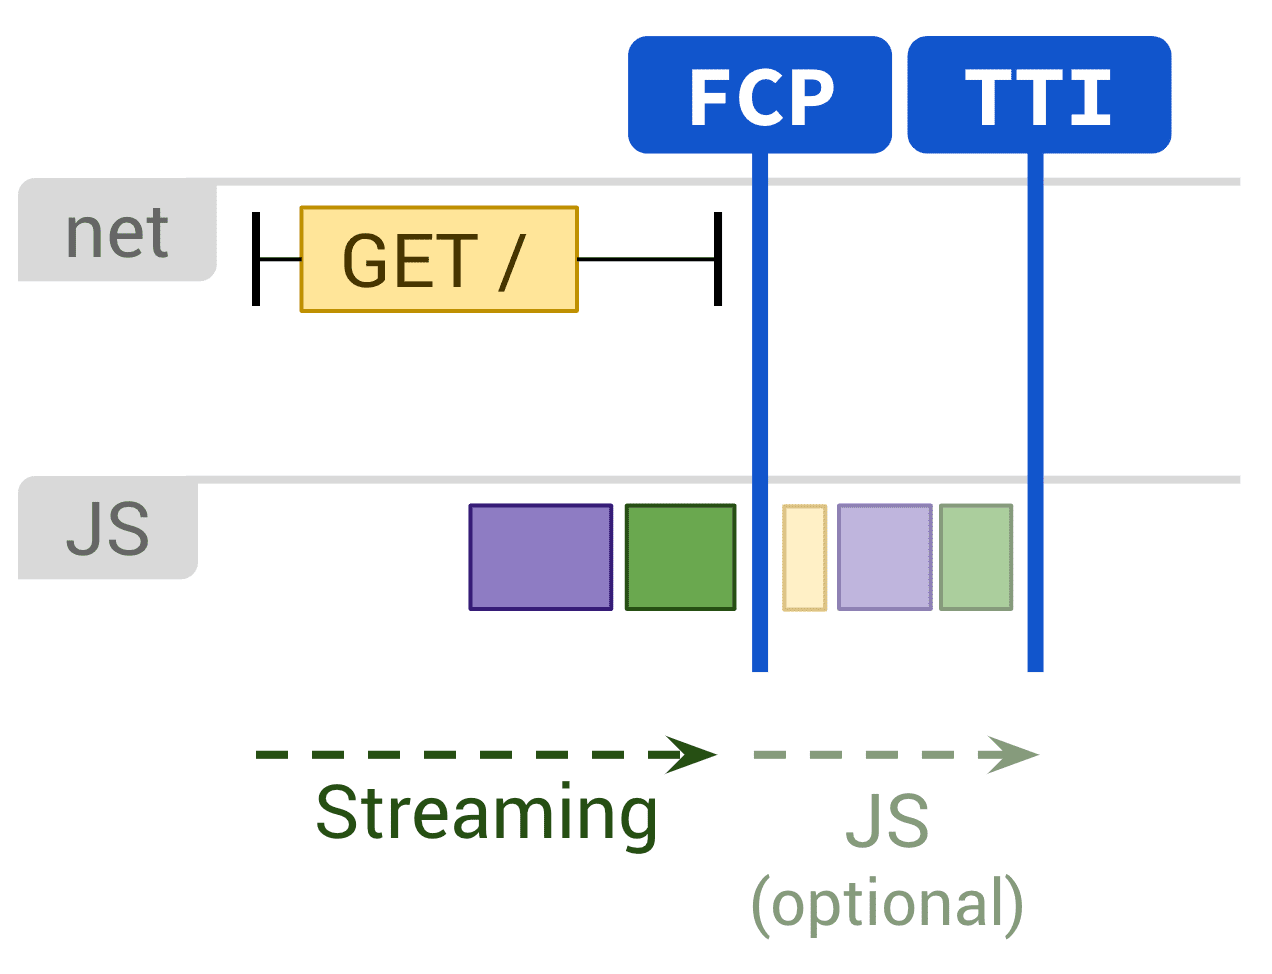 رسم بياني يُظهر العرض الثابت وتنفيذ JavaScript الاختياري الذي يؤثر في سرعة عرض المحتوى على الصفحة وTTI